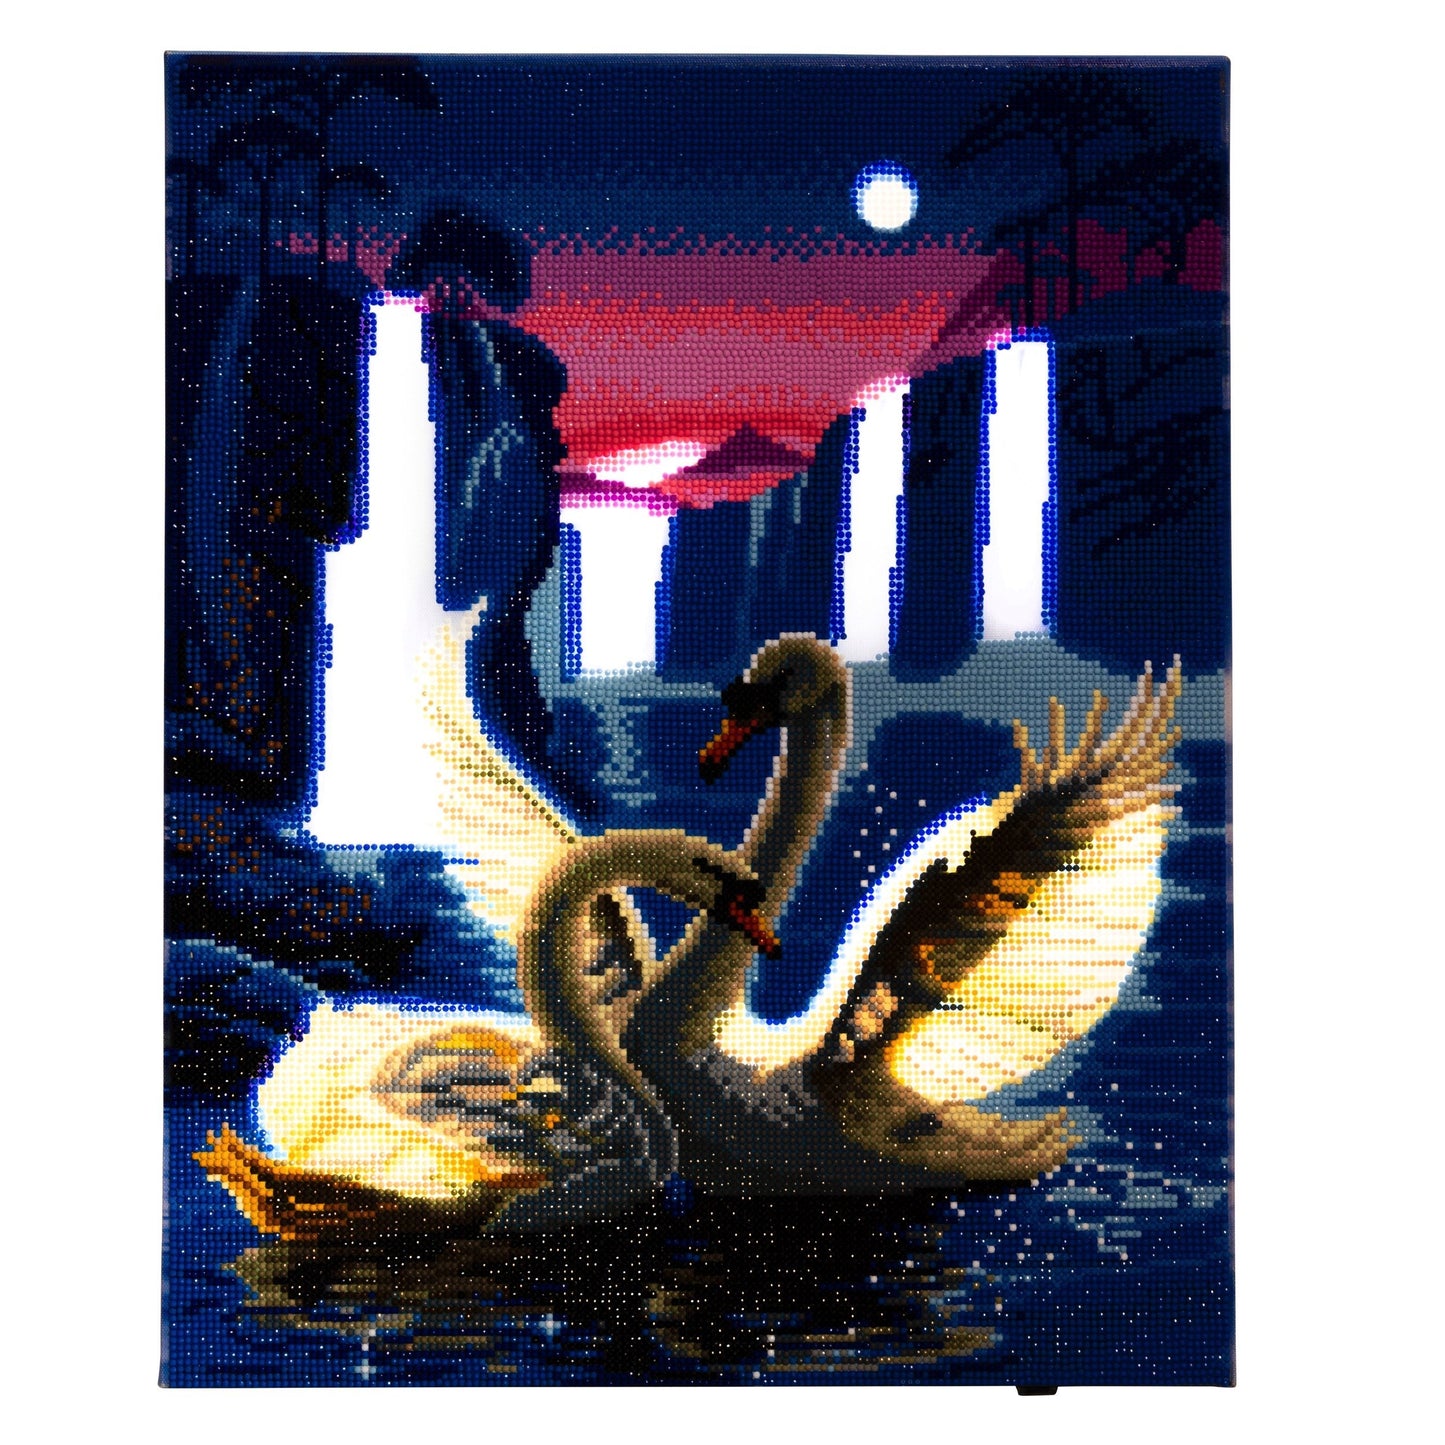 CAK-XLED7 "Moonlight Swans" Framed LED Crystal Art Kit - 40 x 50